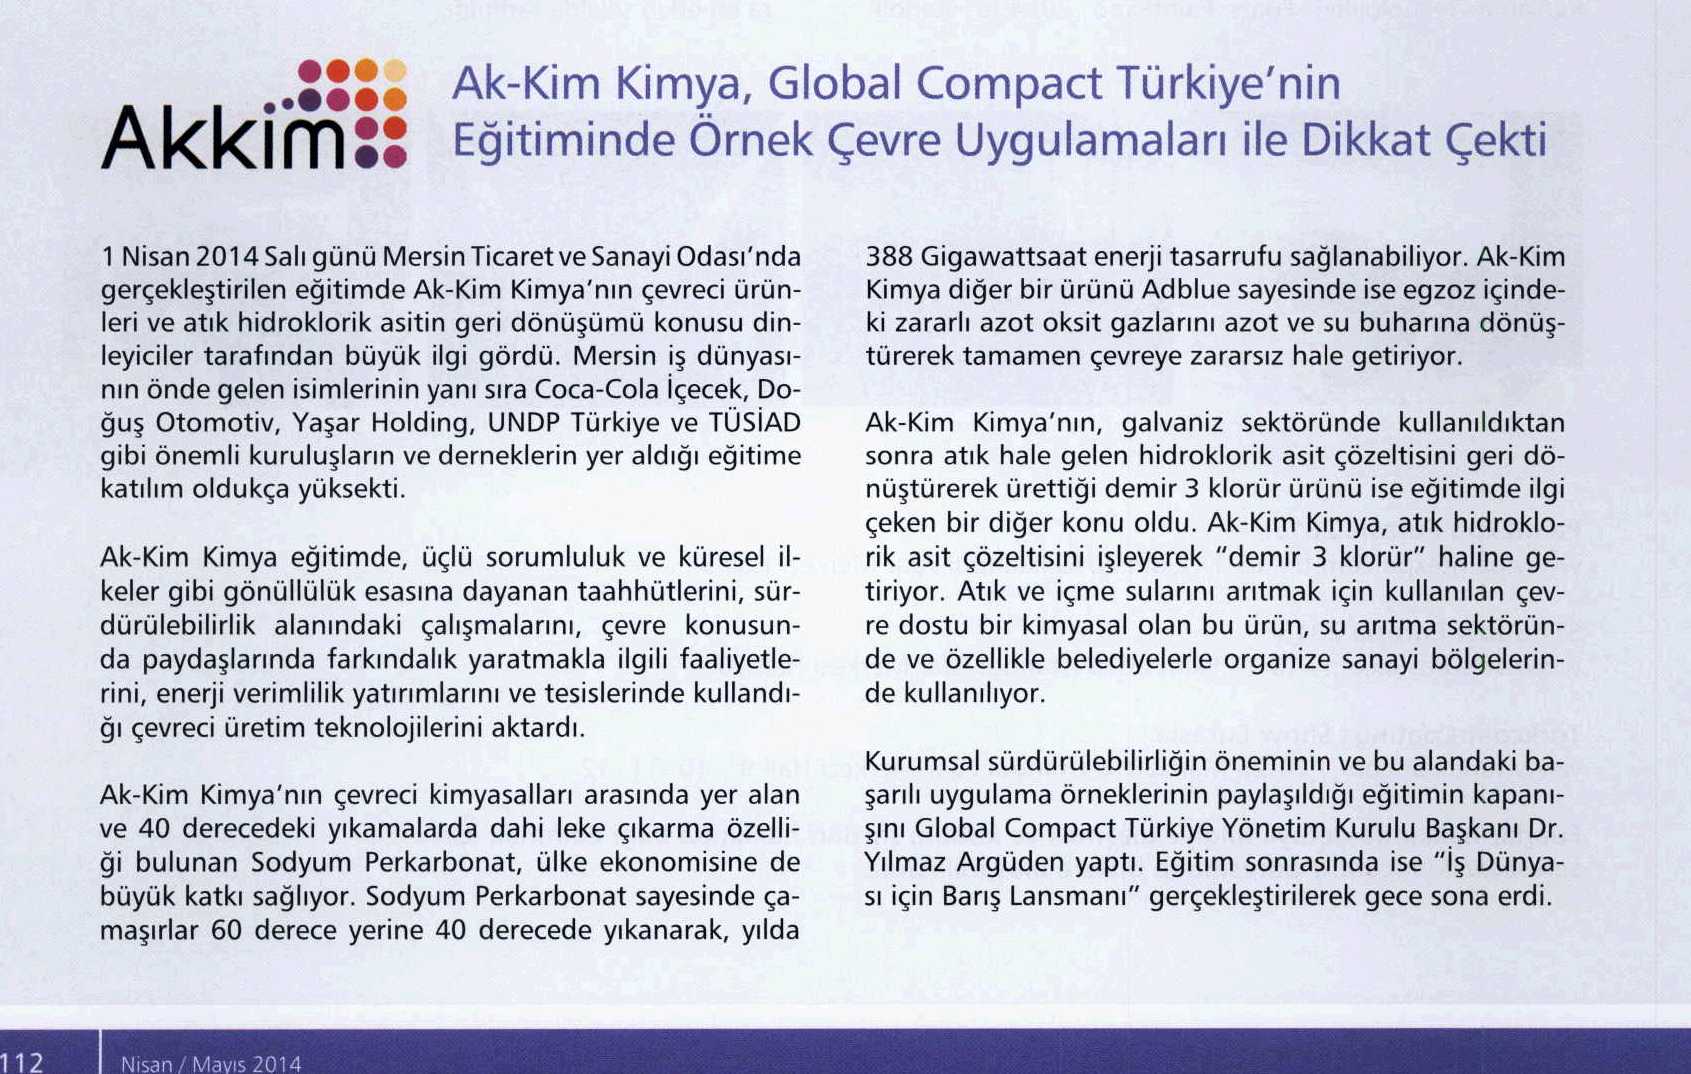 Akkim Kimya Global Compact Türkiye’nin Eğitiminde Örnek Çevre Uygulamaları İle Dikkat Çekti / Boyatürk / 30 Nisan 2014